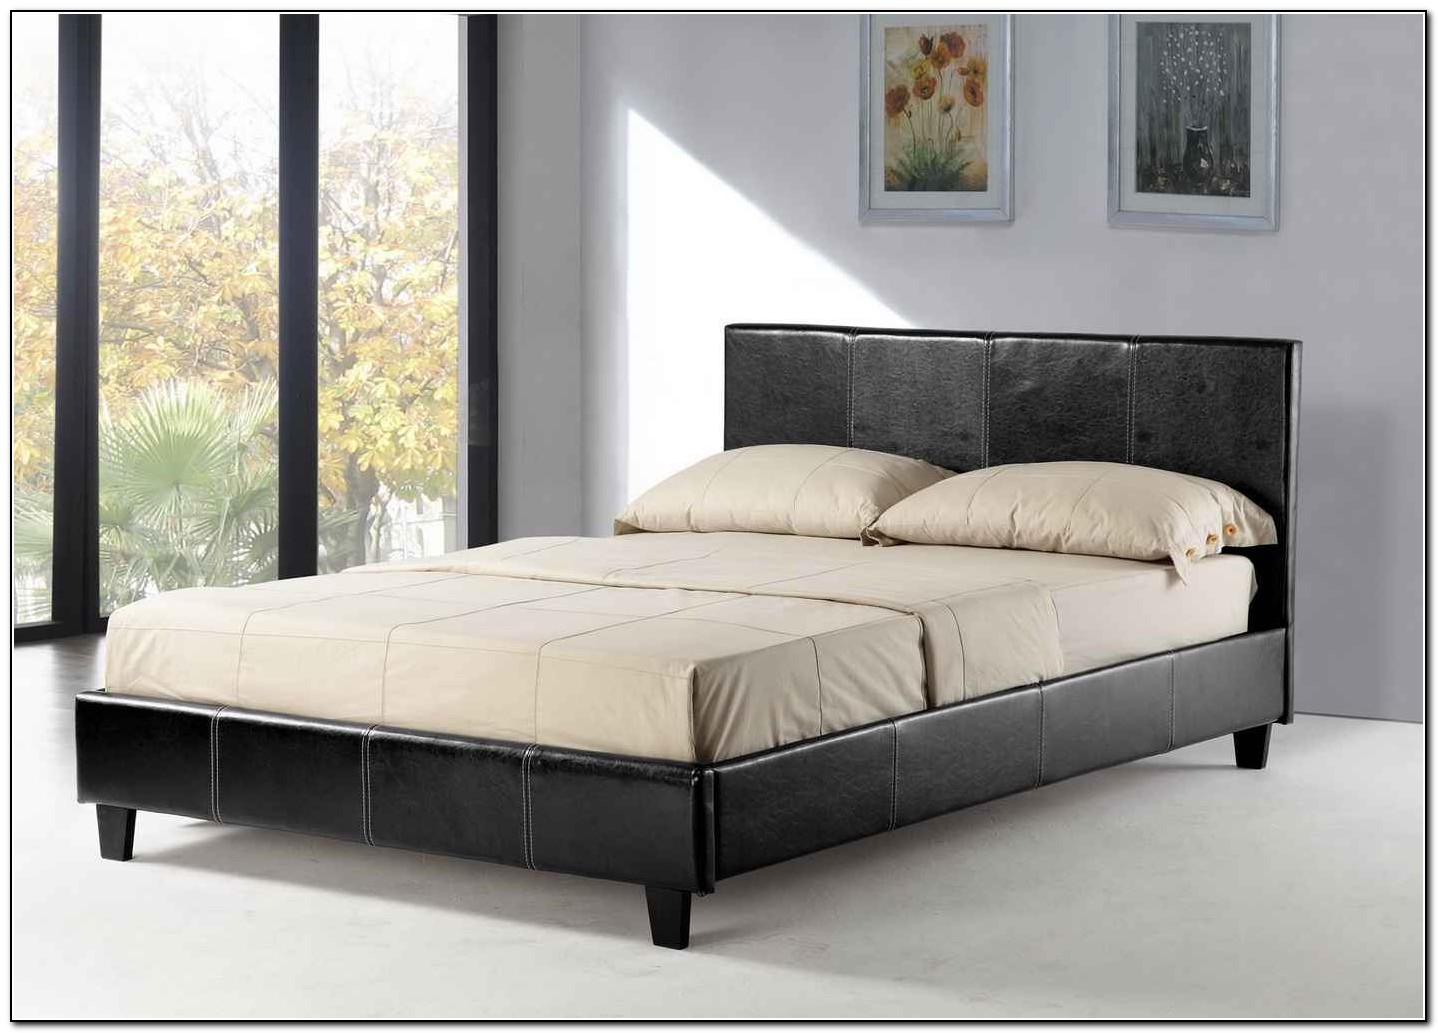 queen bed frame and mattress deals